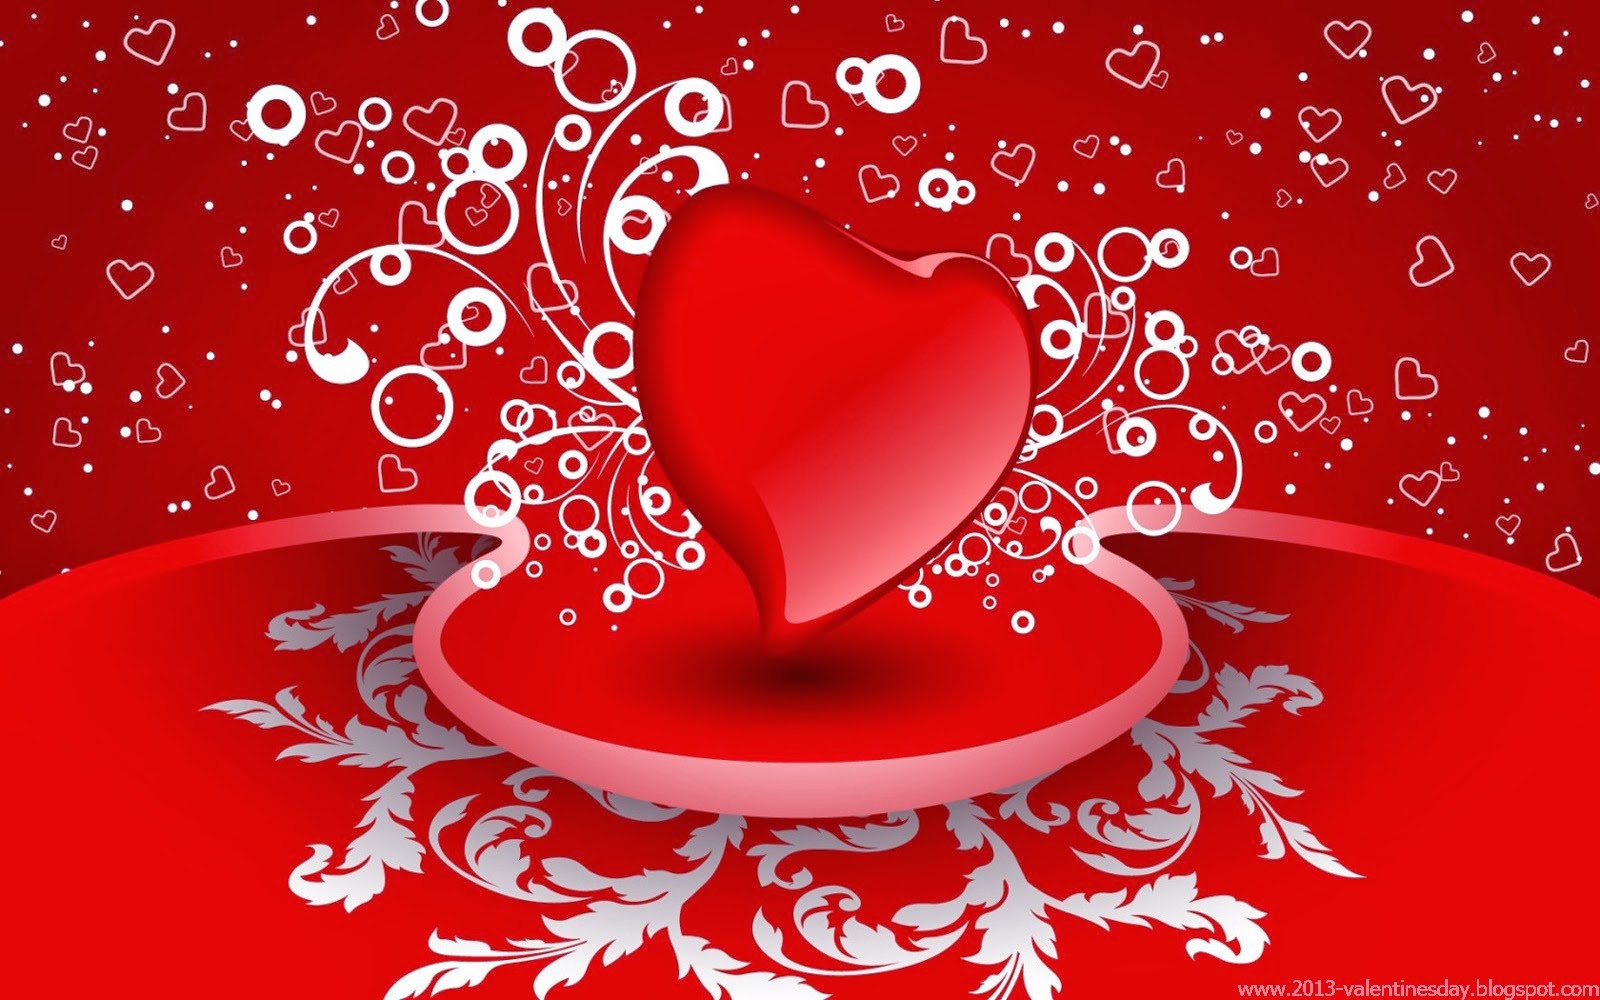 valentine wallpaper,heart,red,valentine's day,love,event